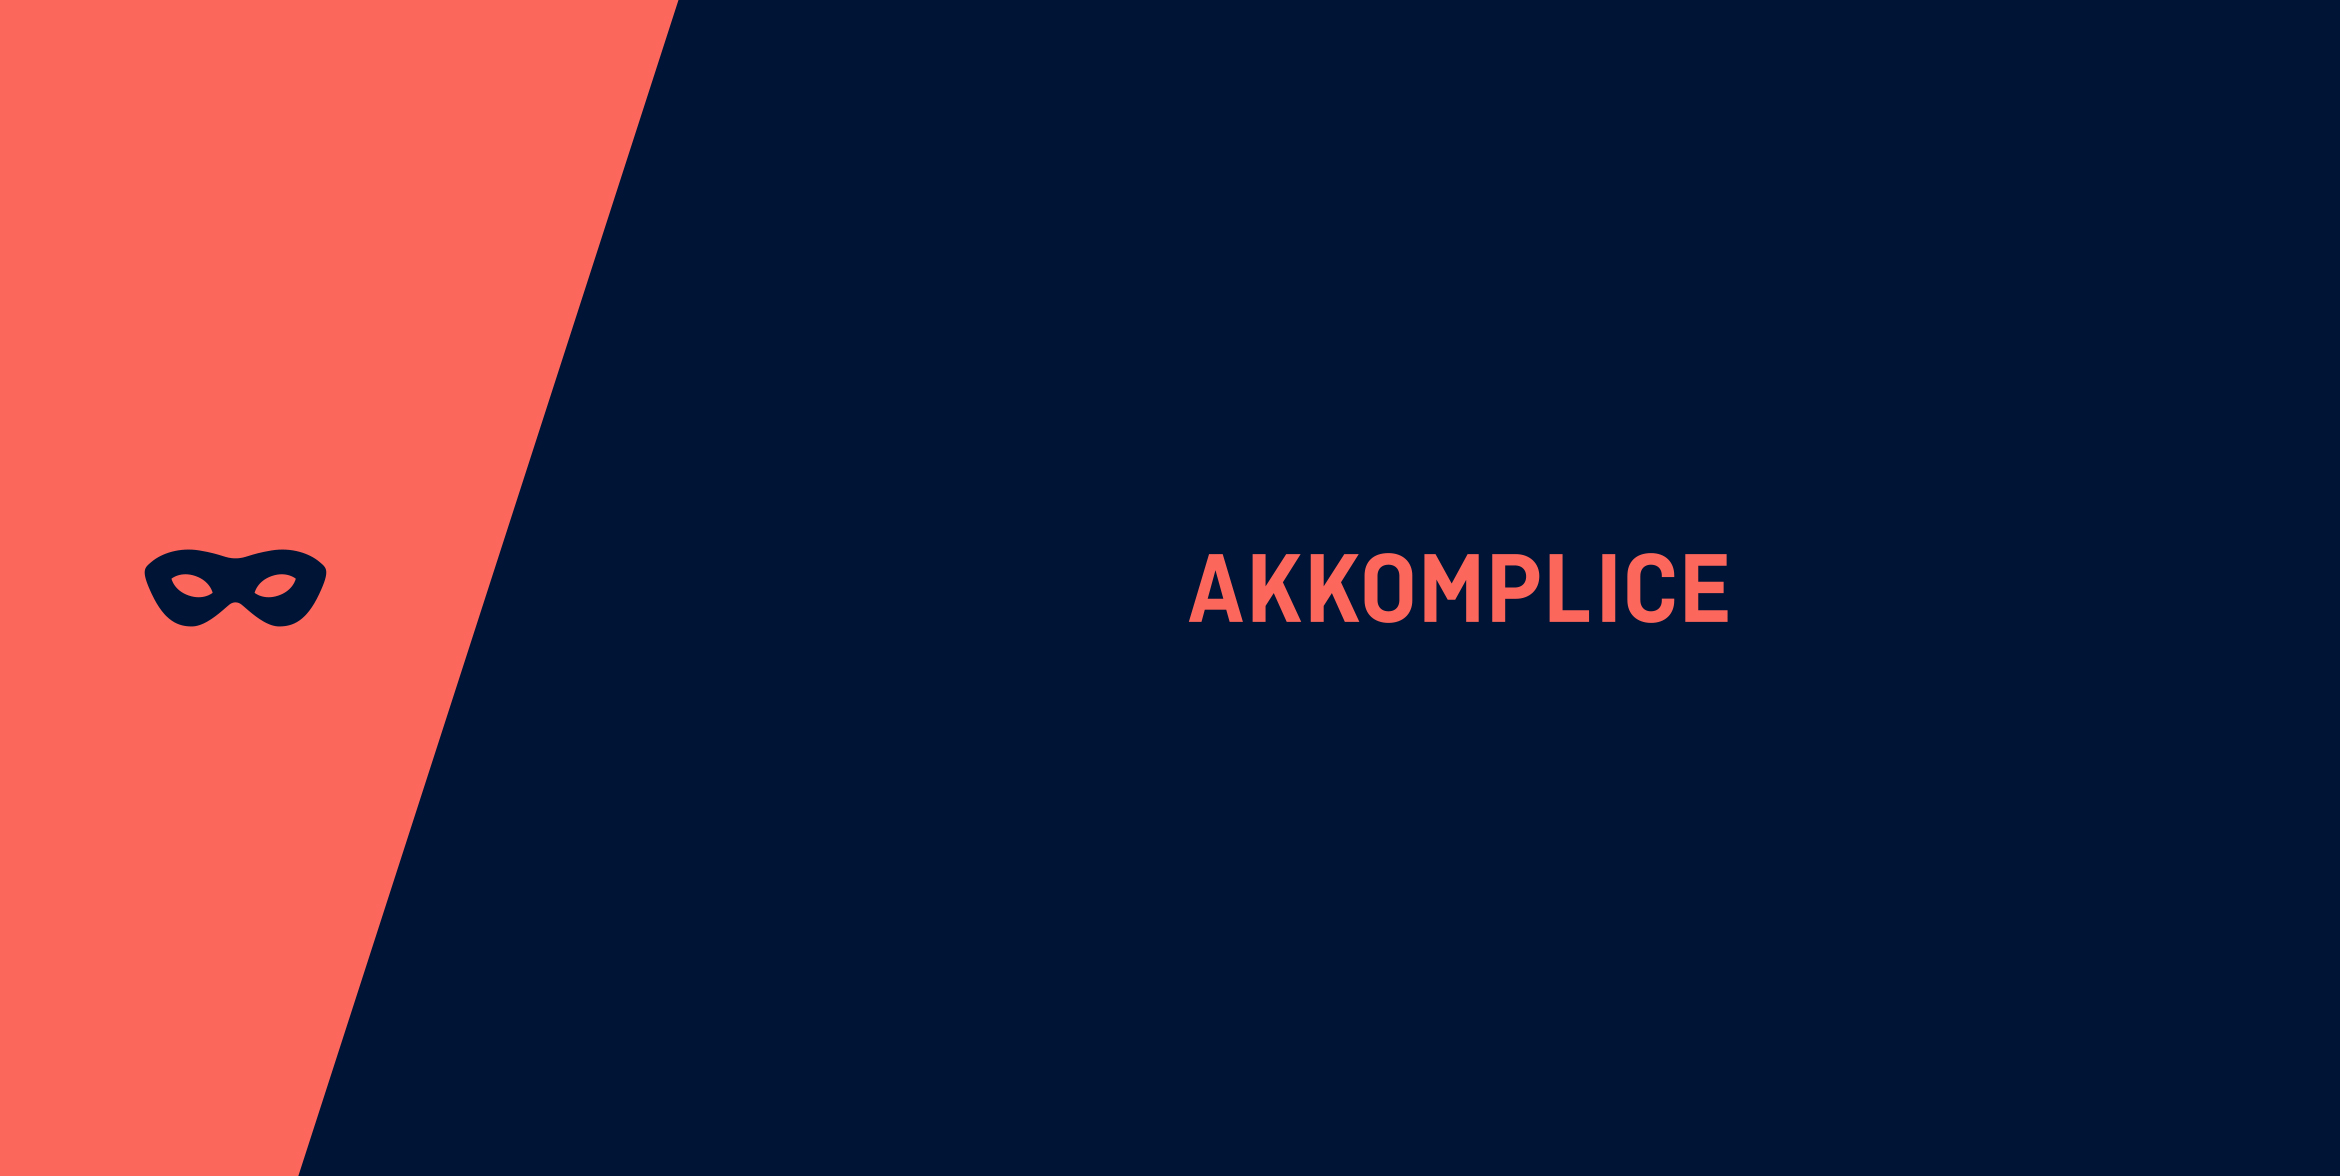 Akkomplice_brandmark2